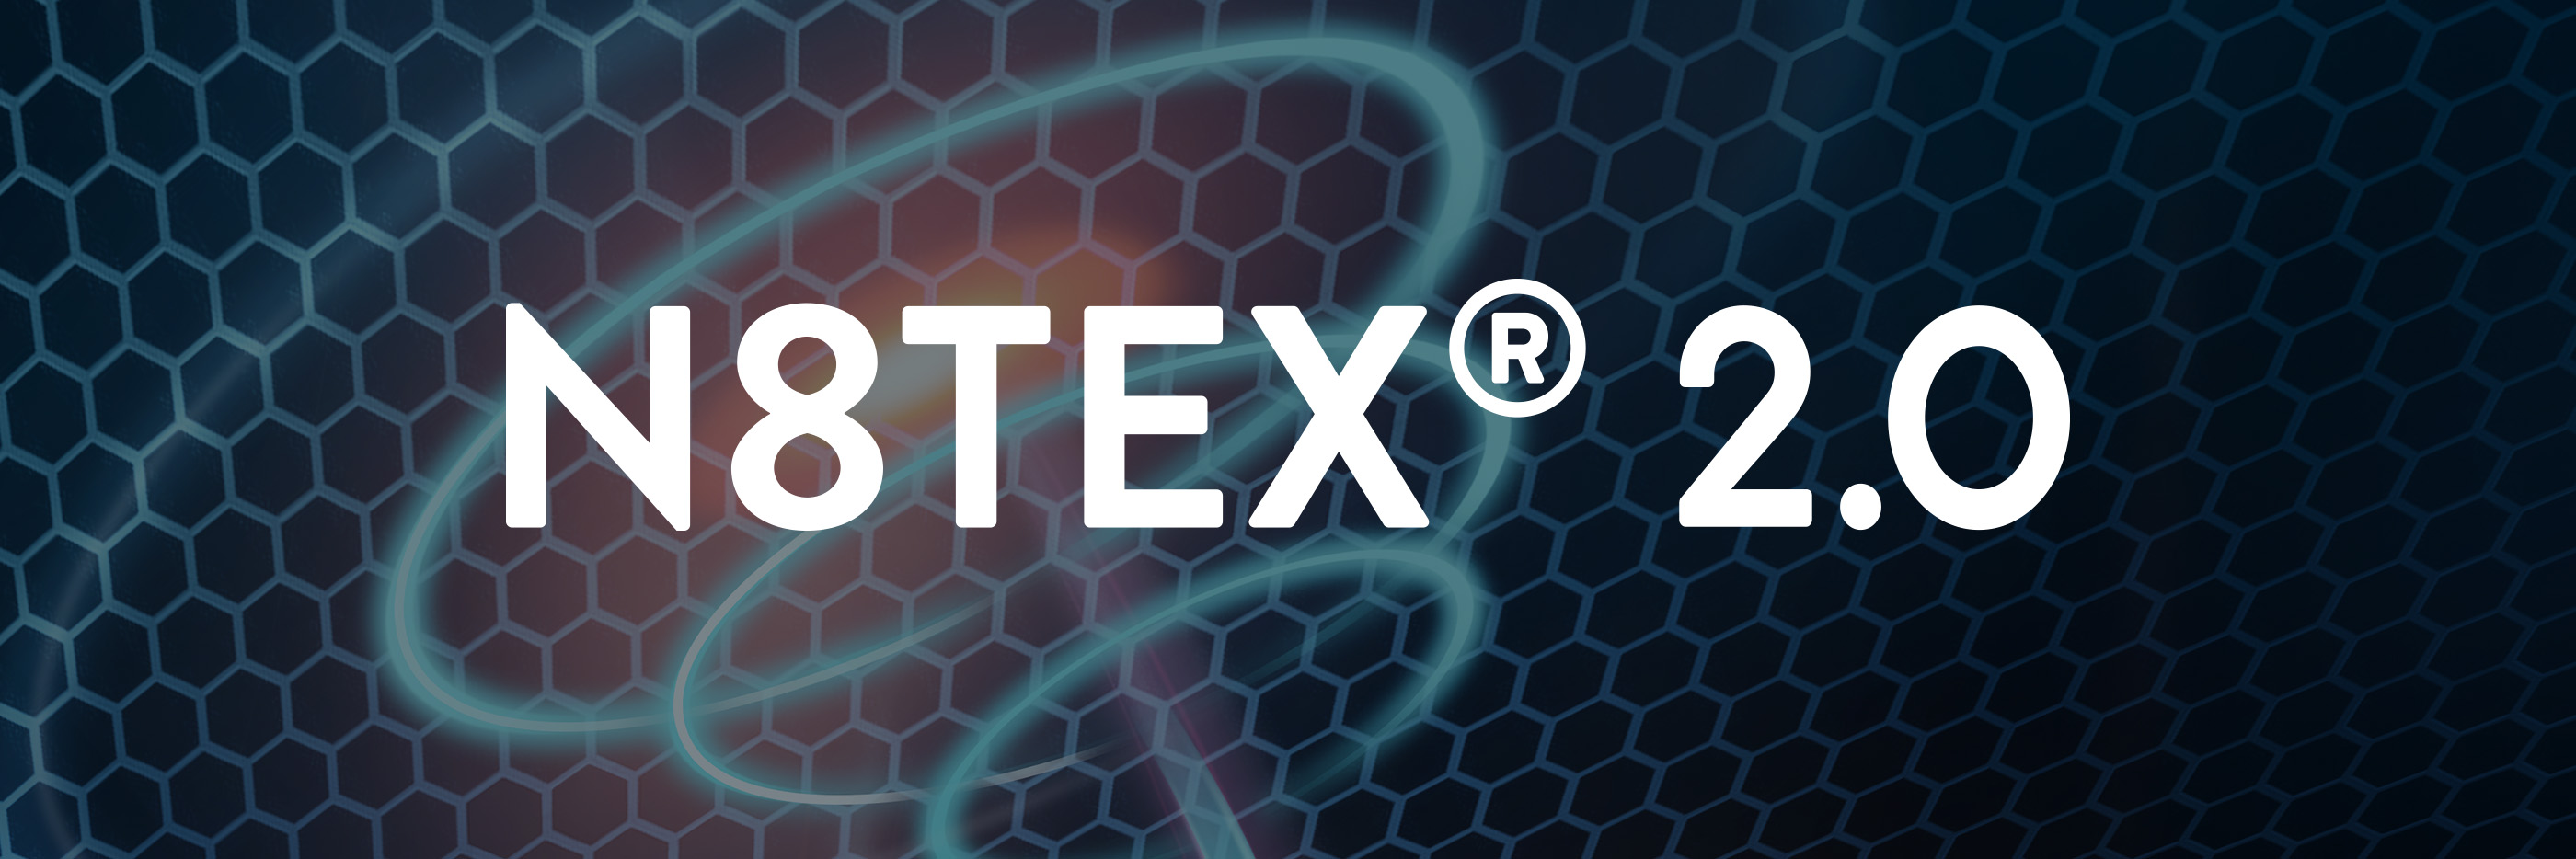 N8TEX®2.0 Logo auf dem Hintergrund der Grafik mit der Vollspektrum-Infrarotenergie | mey®